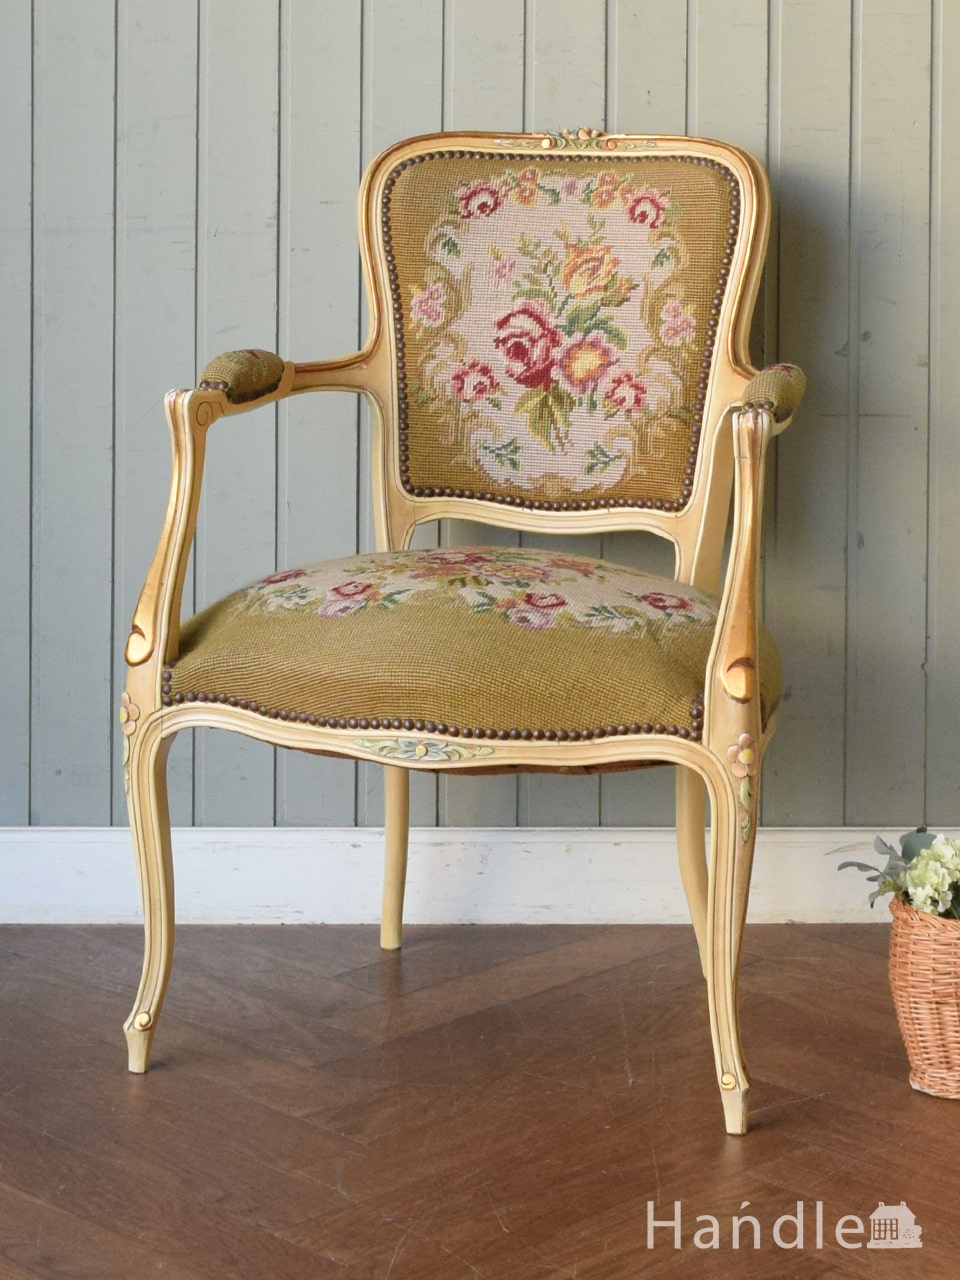 フランス生まれの美しいアンティーク椅子、サロンセットになるプチポワンアームチェア (j-736-c)